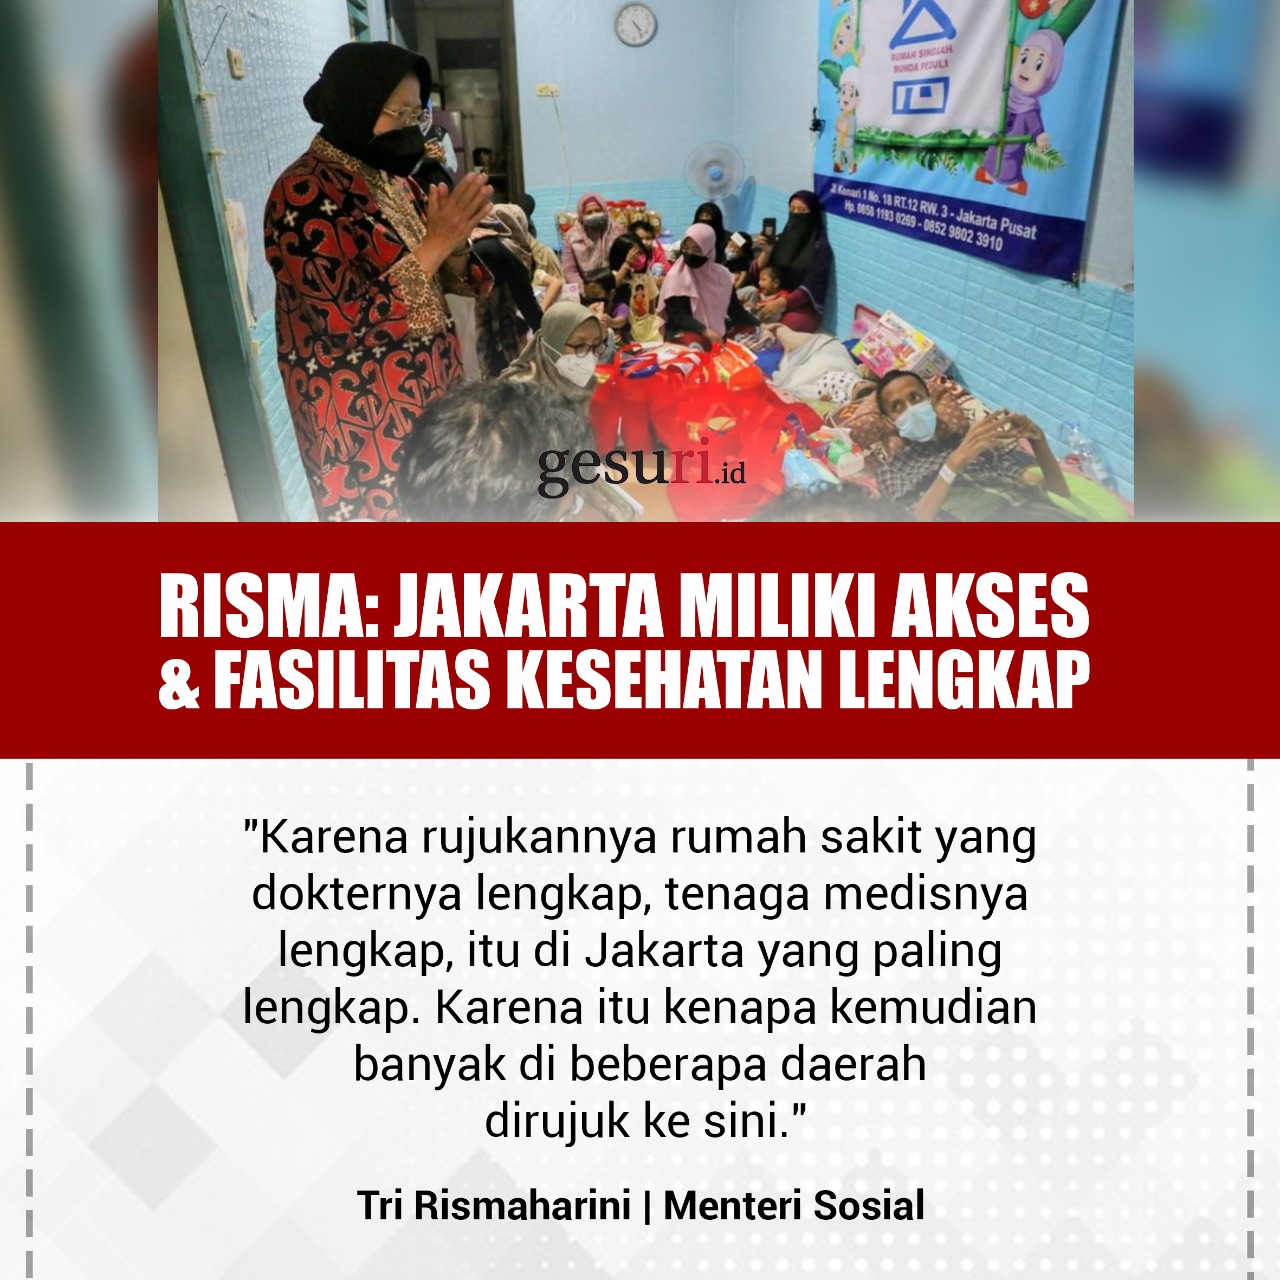 Jakarta Miliki Akses & Fasilitas Kesehatan Lengkap (1/3)